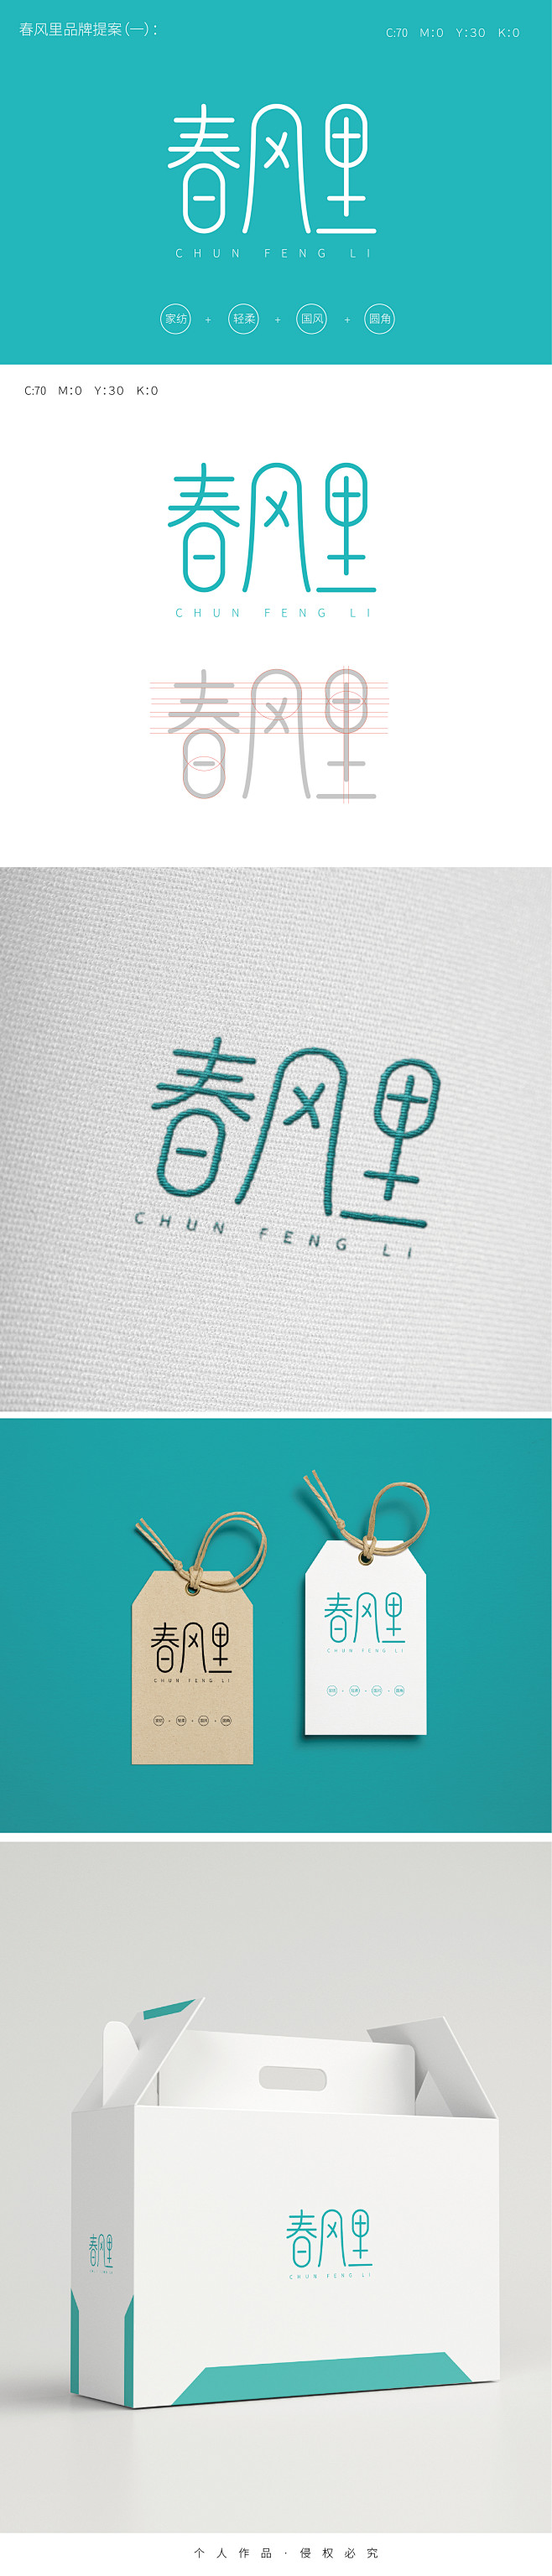 春风里logo提案1